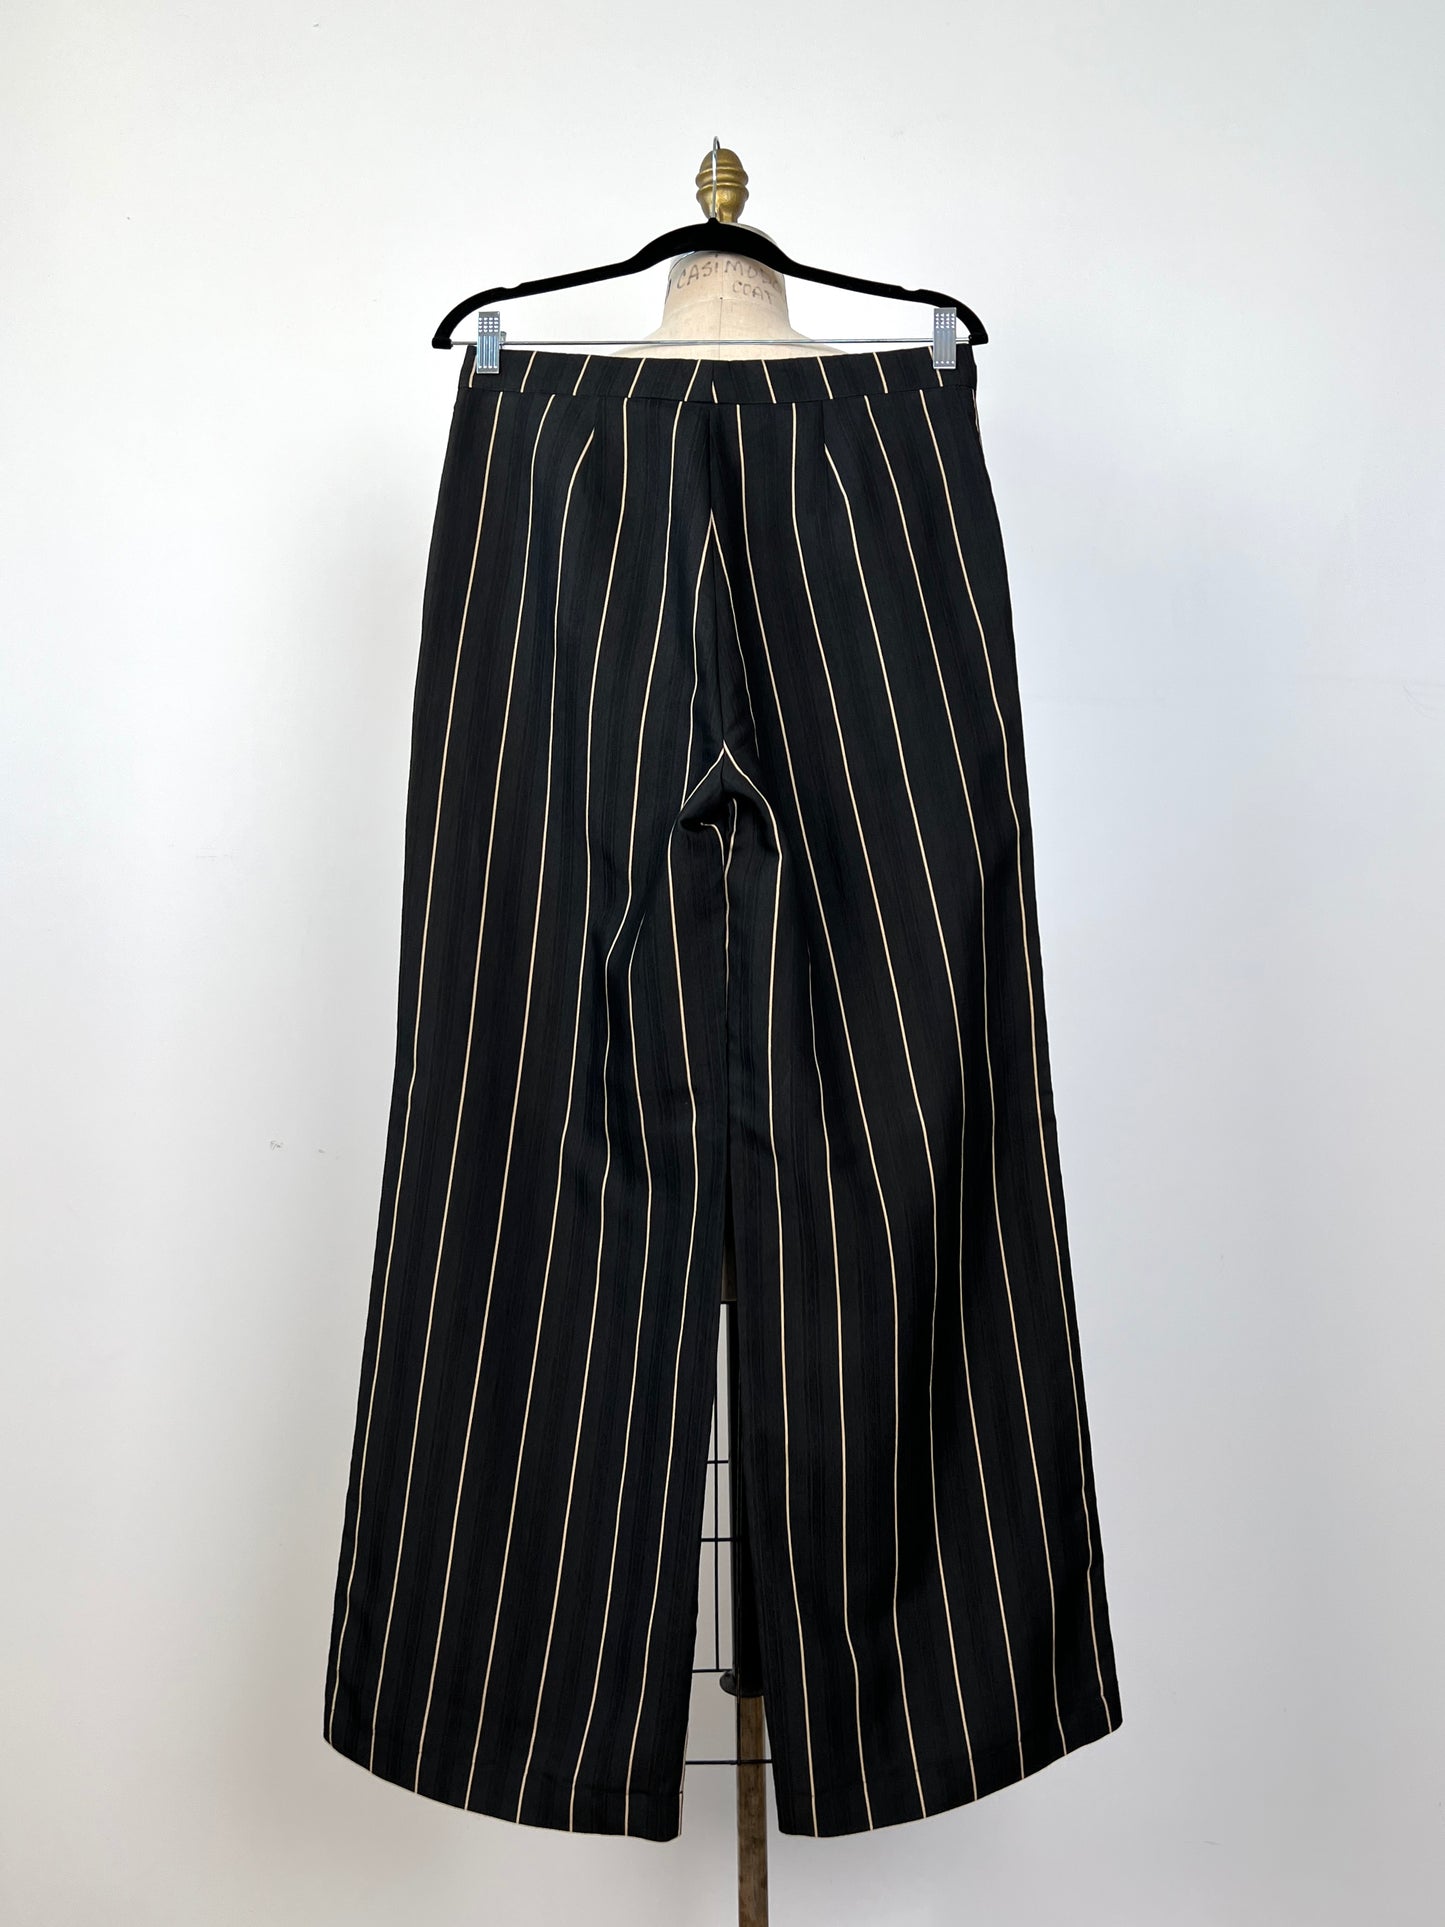 Pantalon tailleur noir à rayures amande (4 à 10)